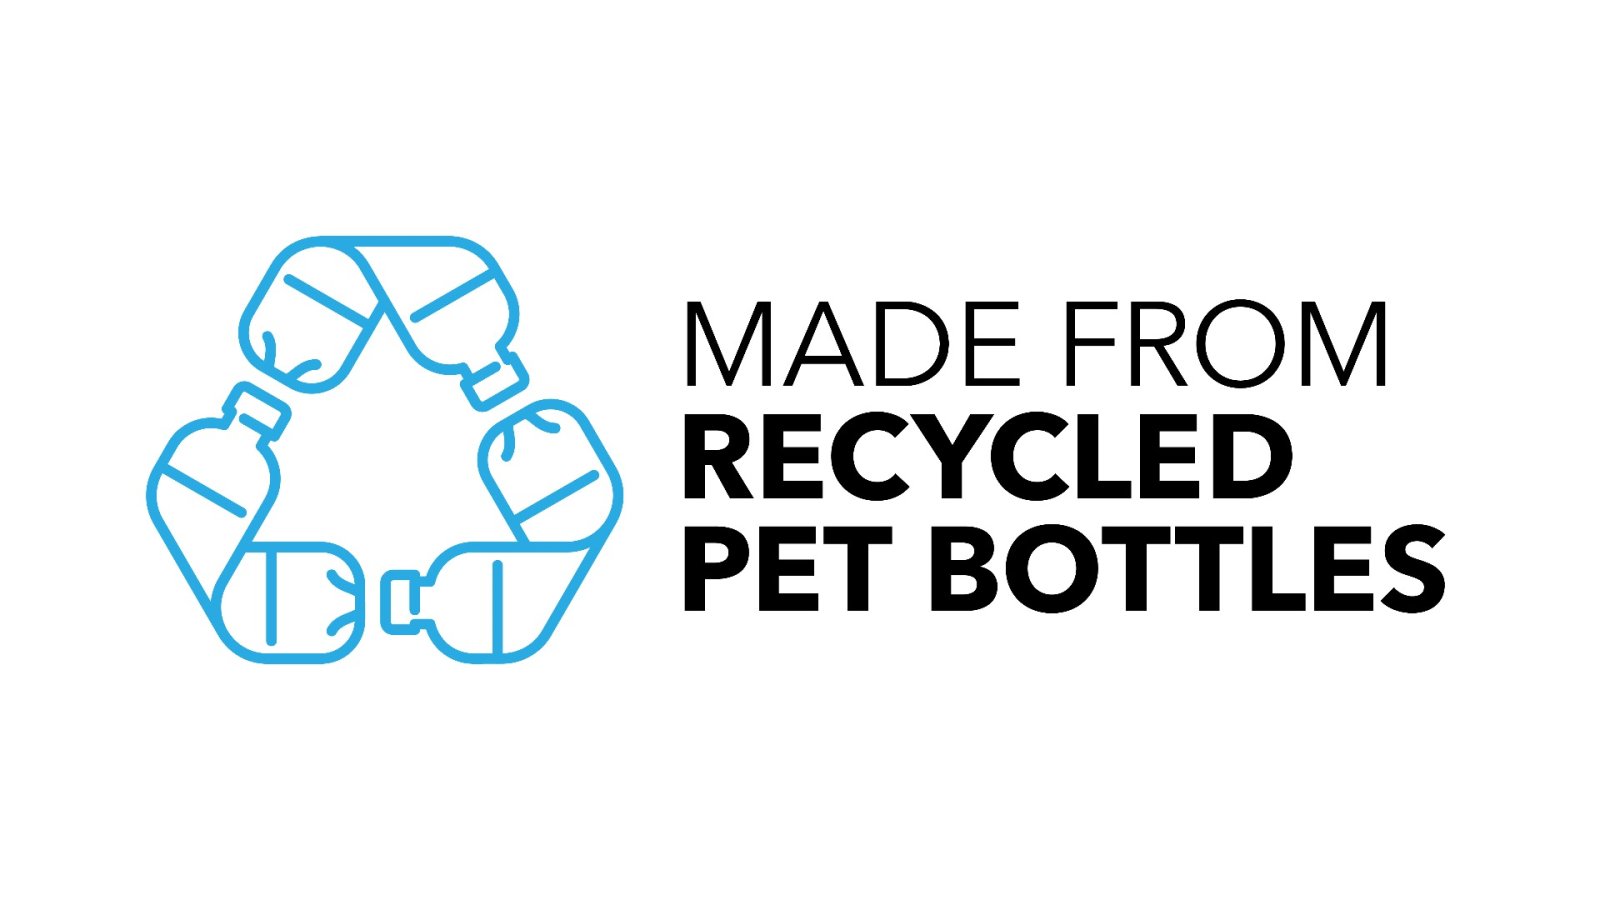 Wie man Upcycling- und Recycling-Accessoires einsetzt, um den Planeten zu retten